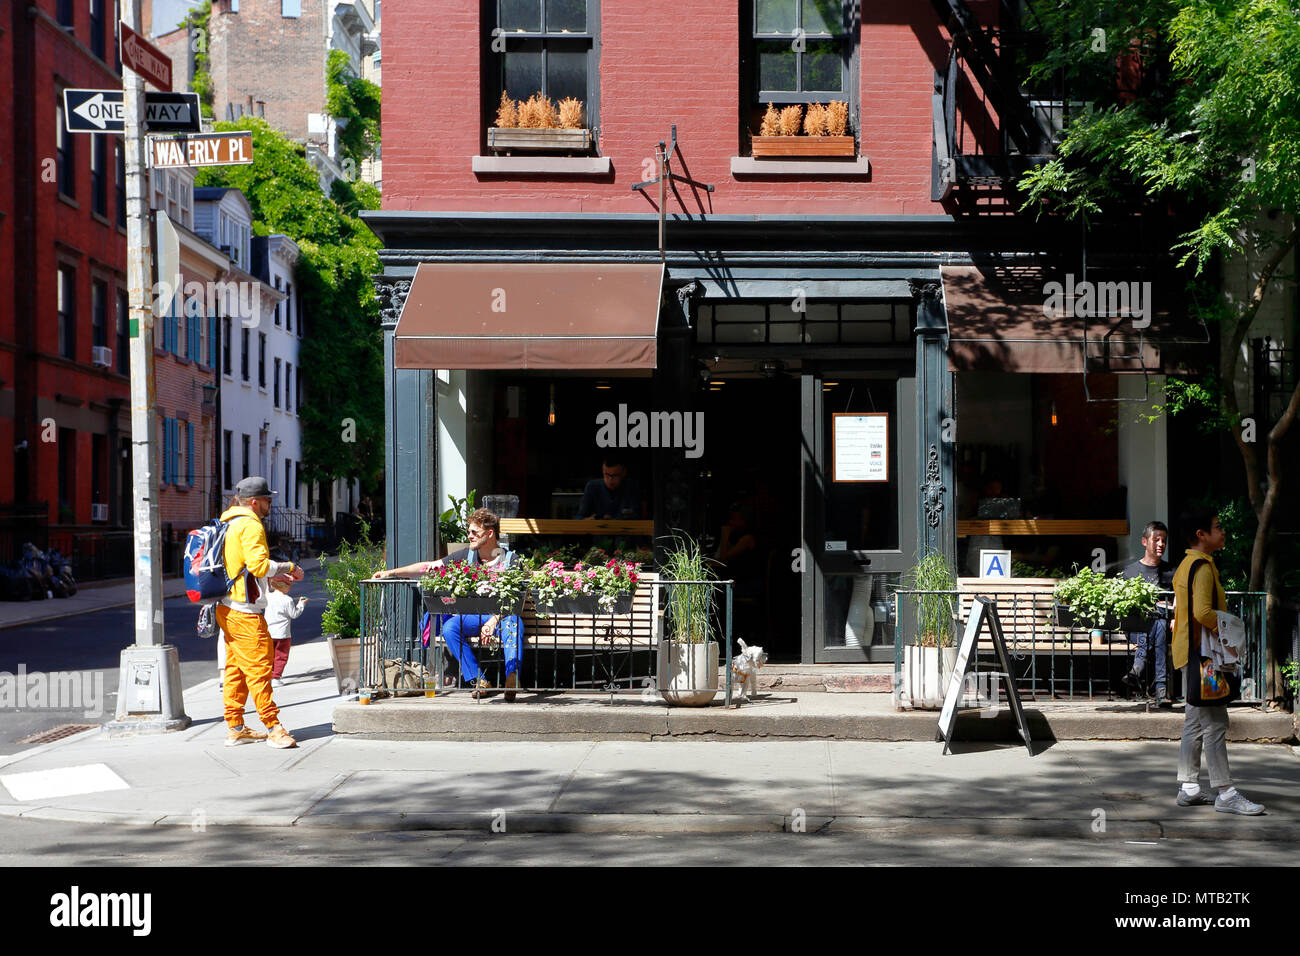 Joe Kaffee, 141 Waverly Pl, New York, NY. aussen Verkaufsplattform für einen Coffee Shop und Straßencafé in der Nähe von Greenwich Village in Manhattan. Stockfoto